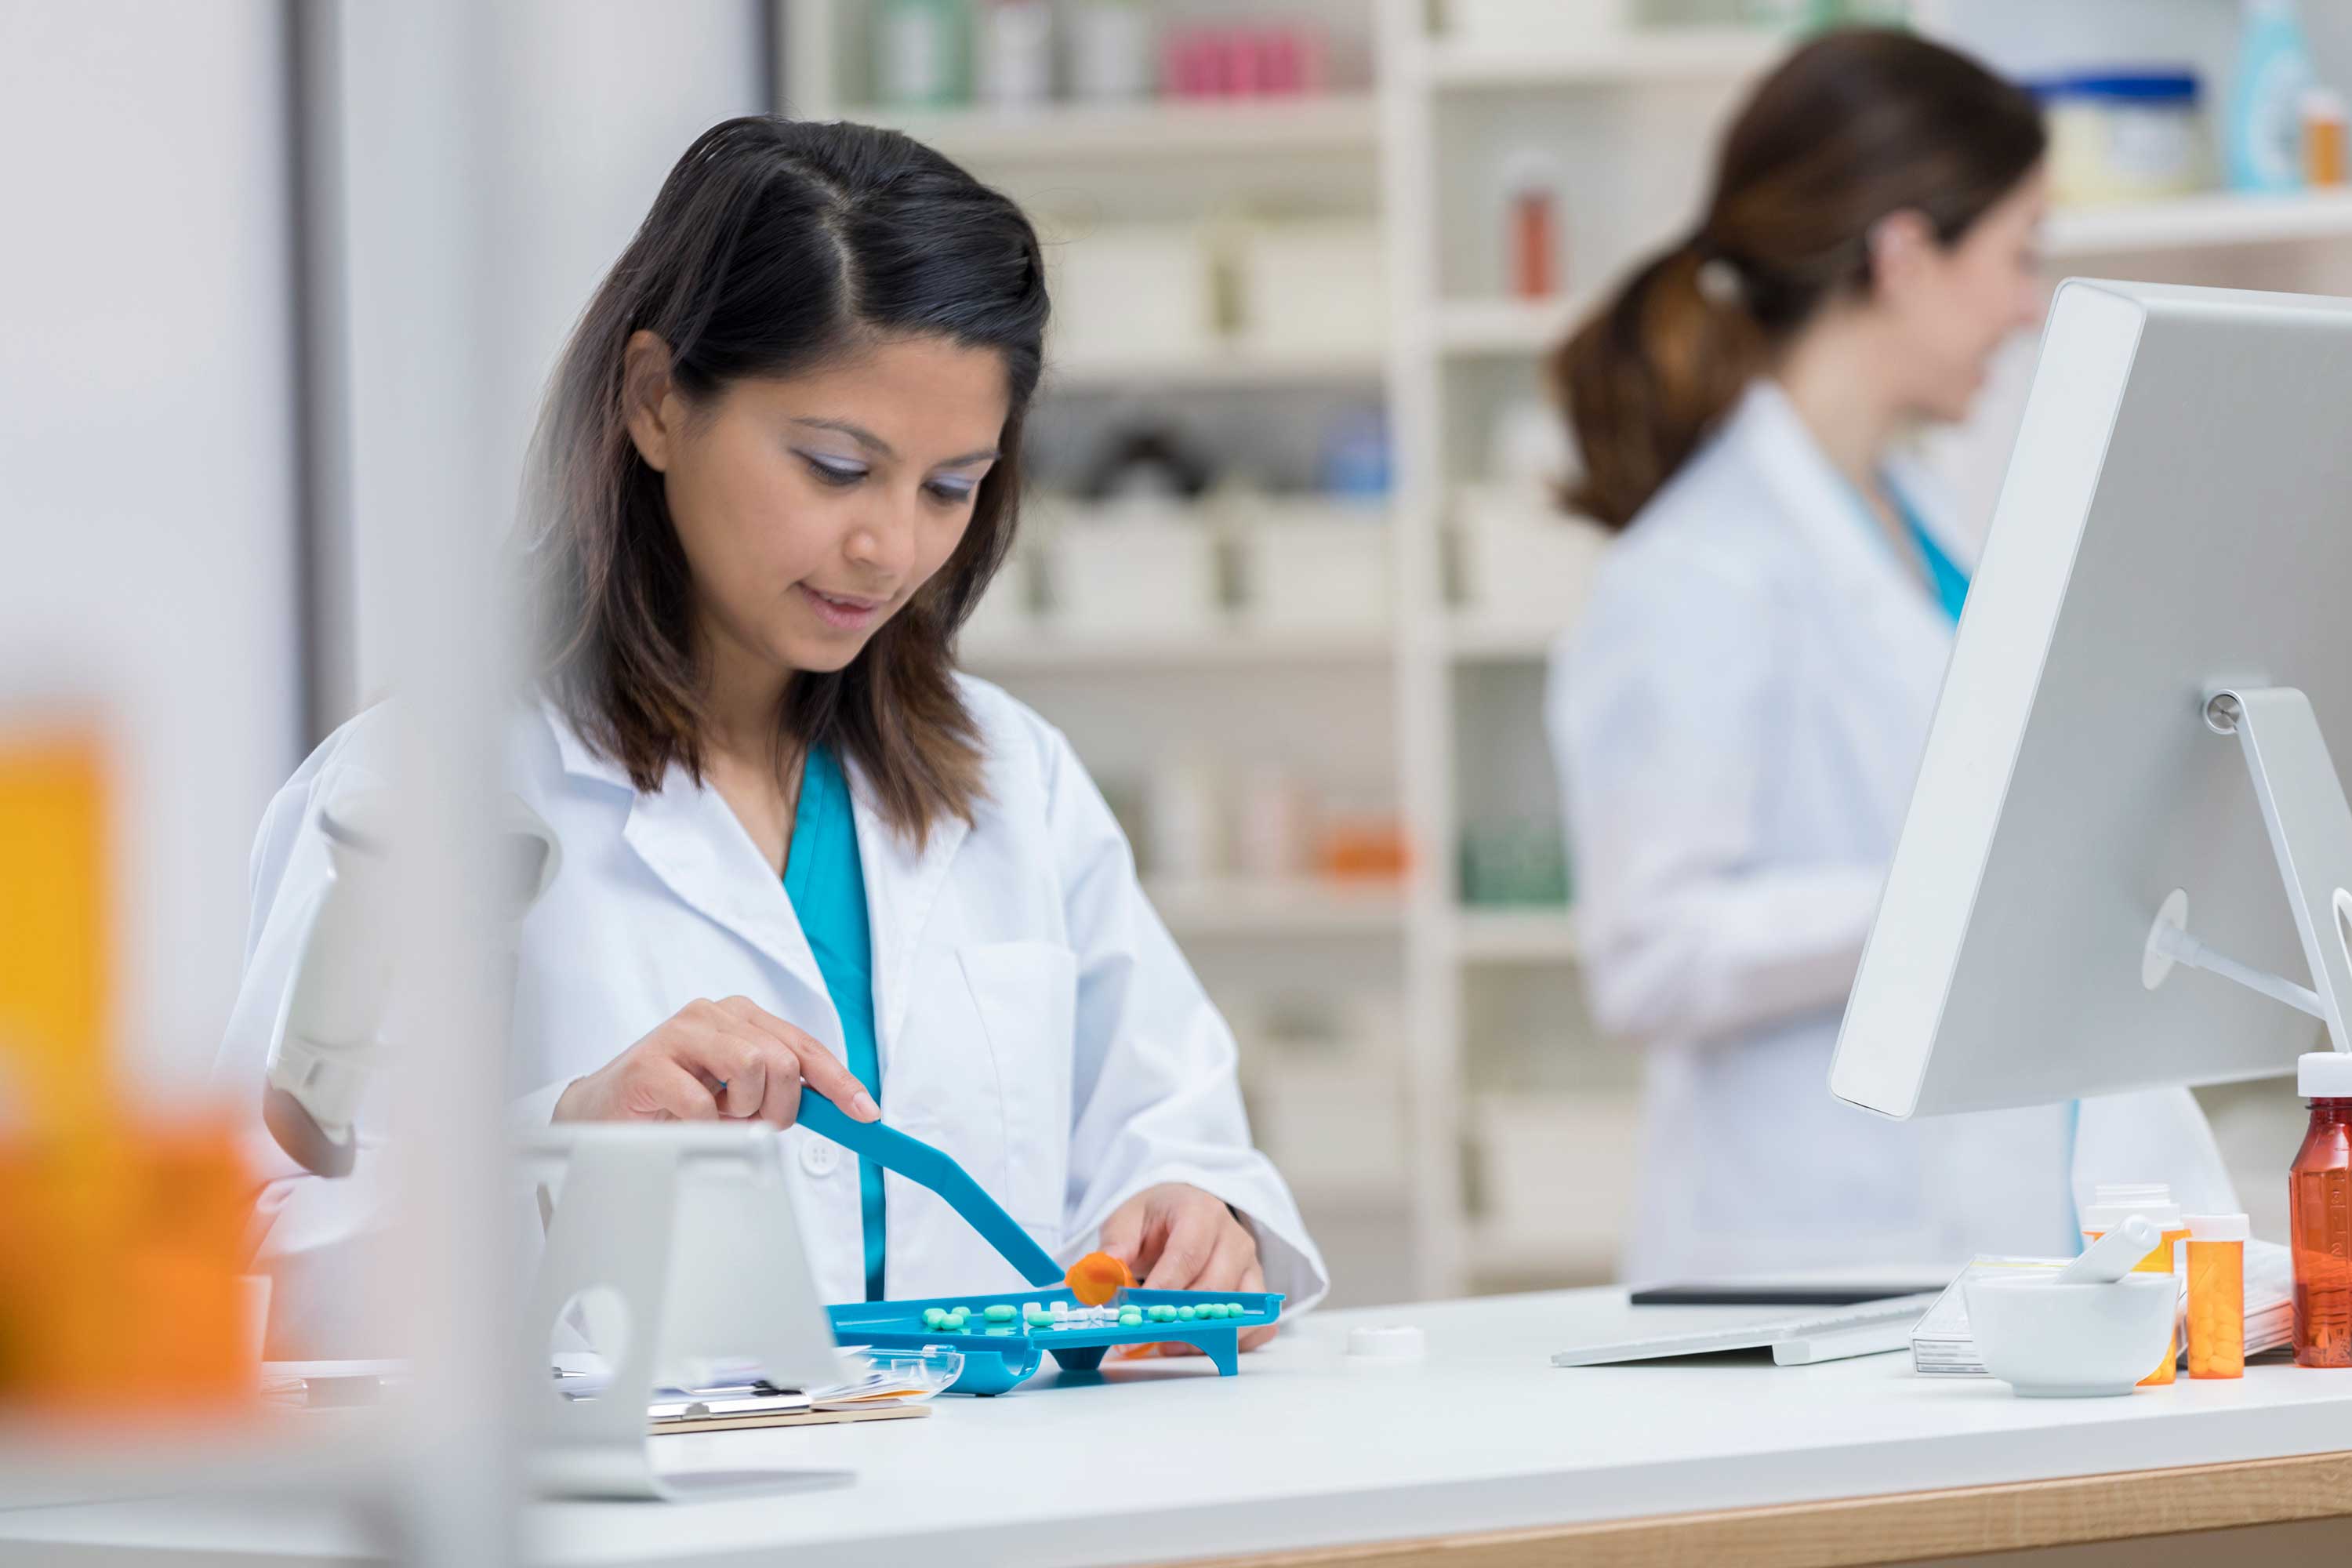 Pharmacist dividing medicine in tray